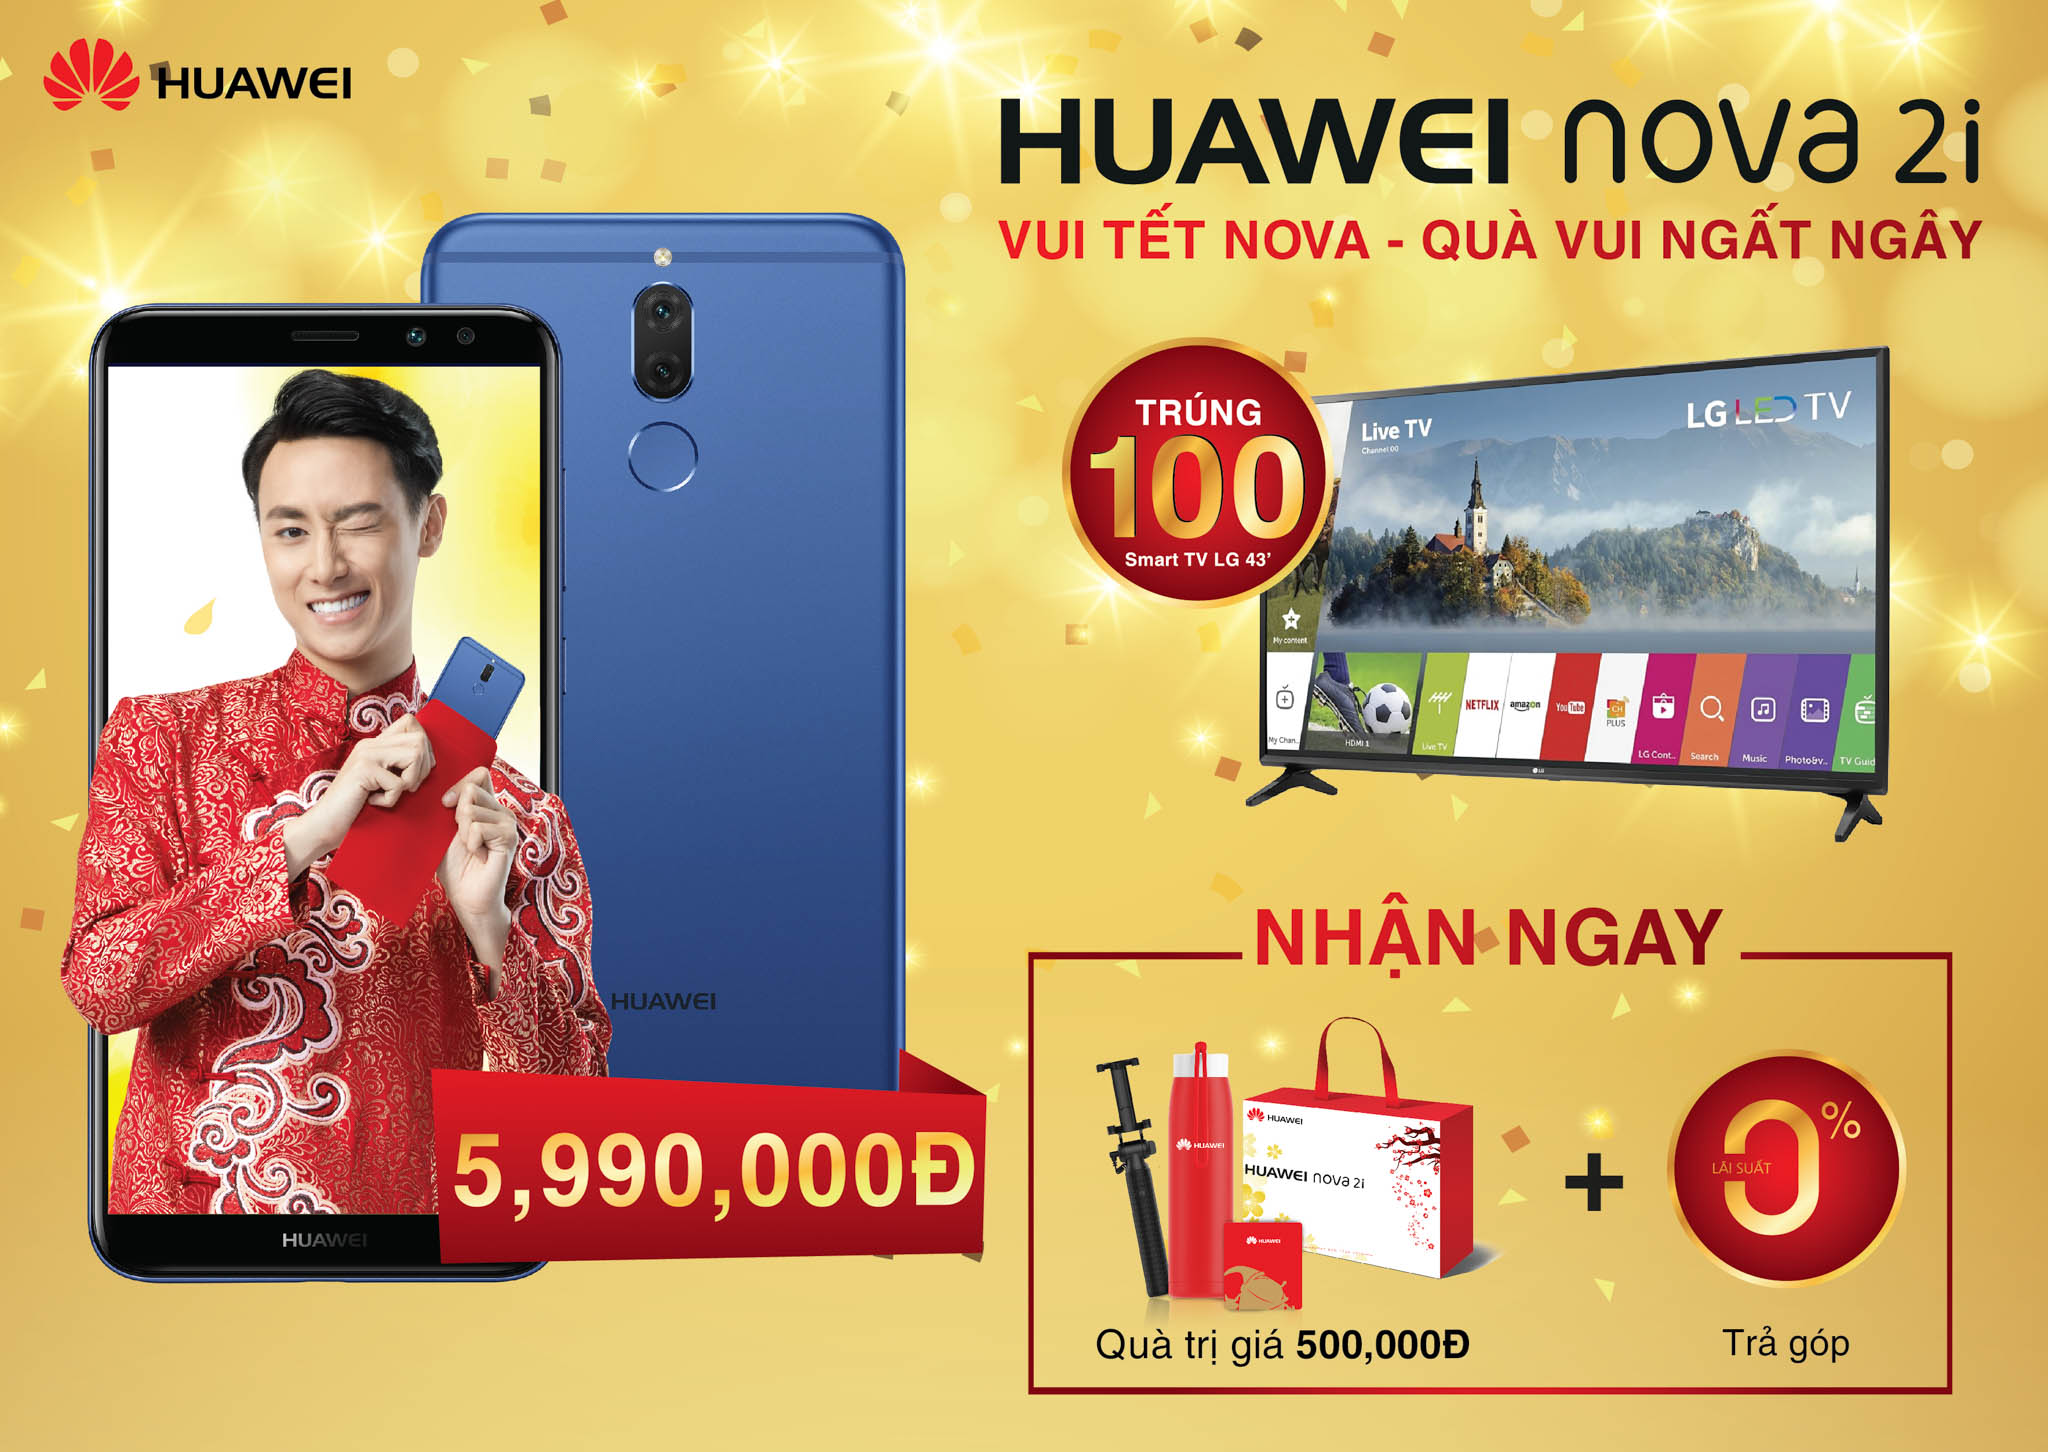 Năm mới như ý với ưu đãi hấp dẫn từ Huawei